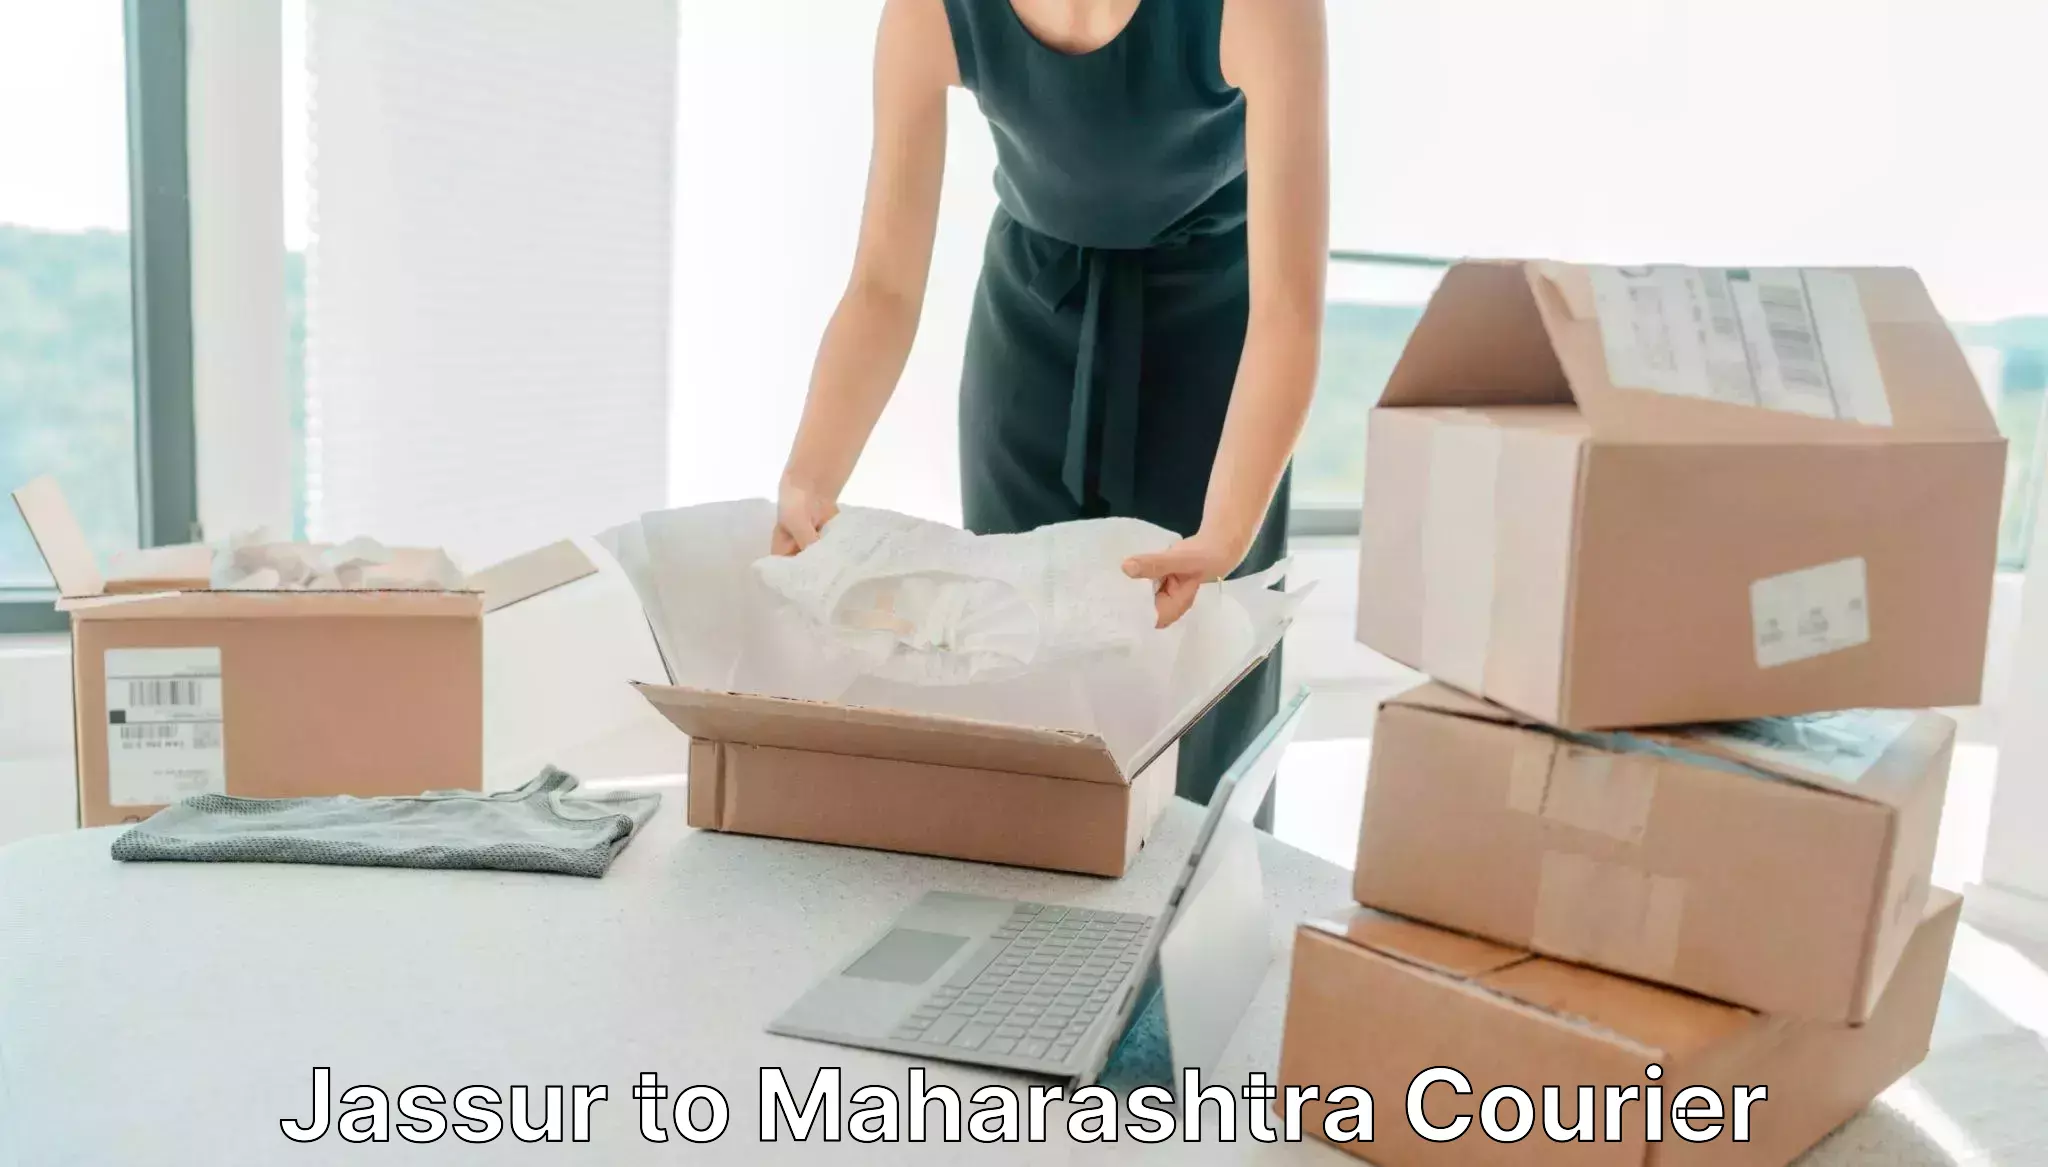 Quality courier partnerships Jassur to Mumbai University